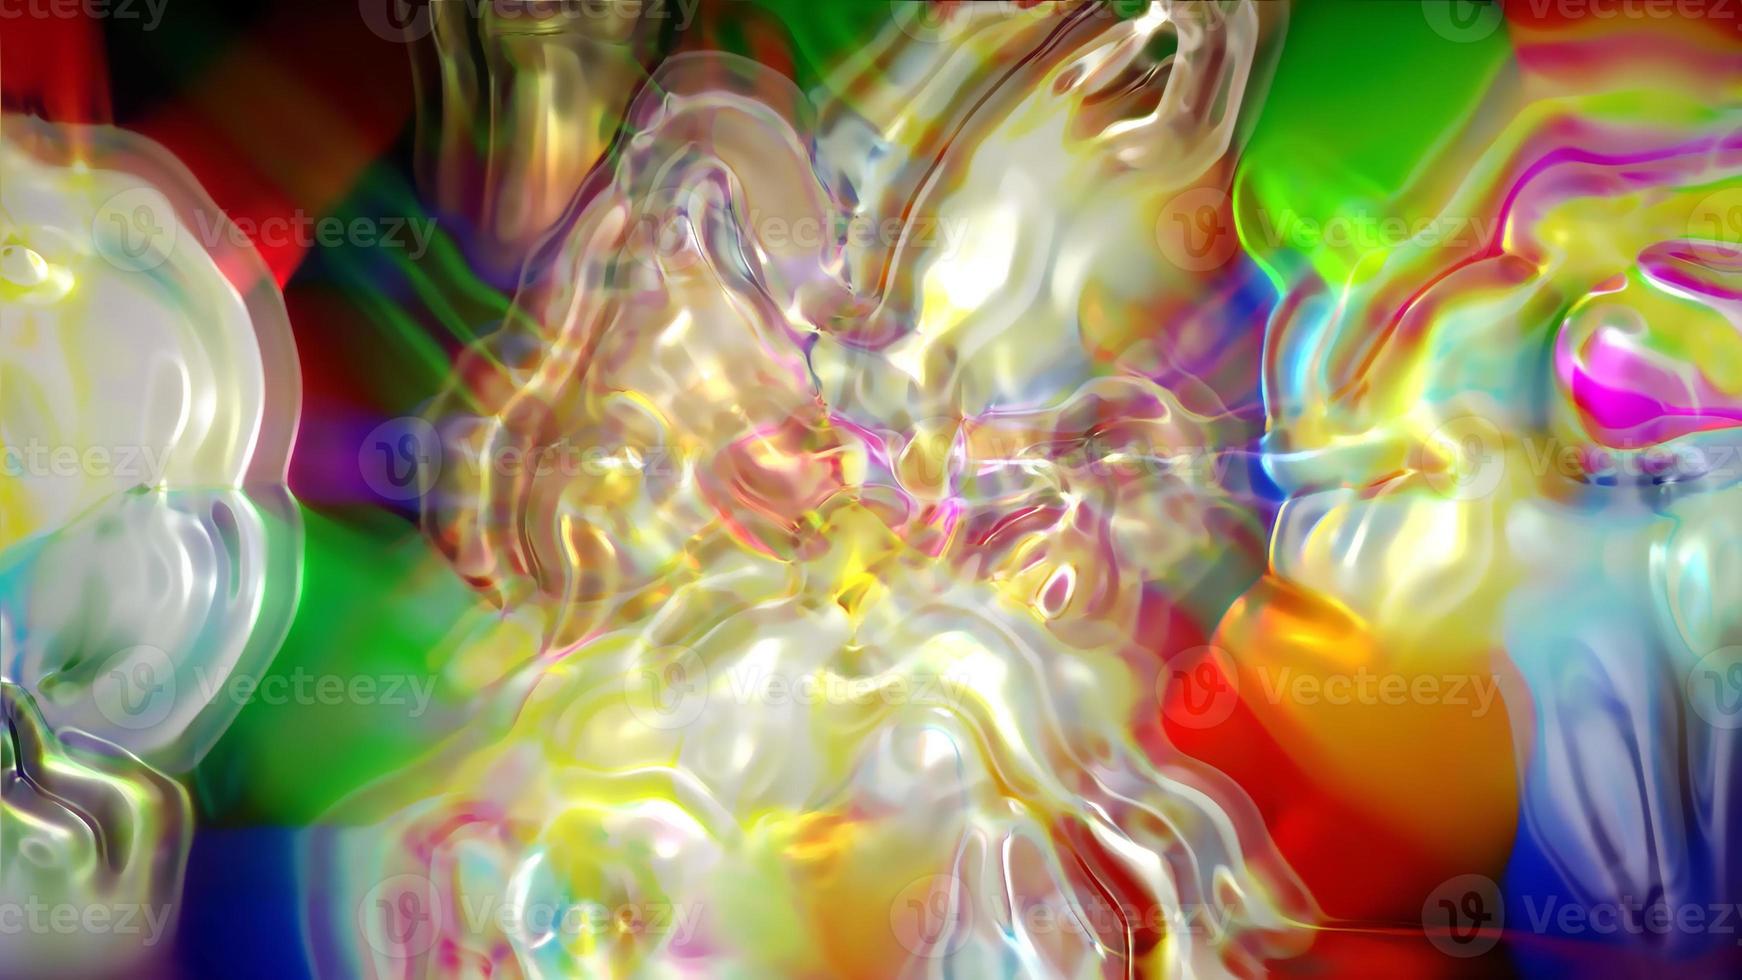 burbujas de colores abstractos foto